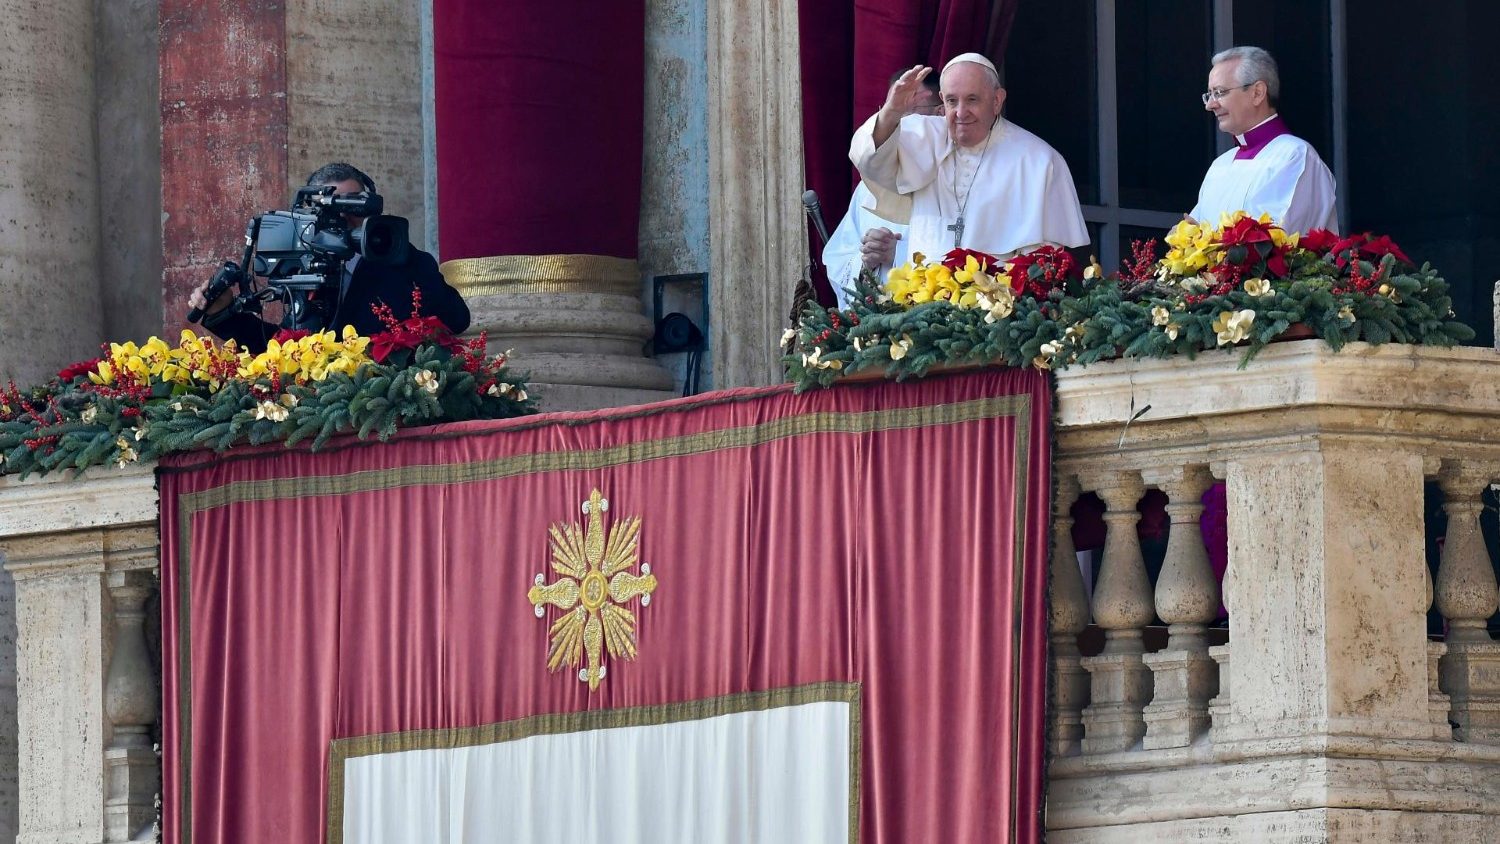 Vaticanul, mesaj atipic de Craciun: armele sa taca, e un razboi fara sens. Dumnezeu sa ne ajute sa fim solidari